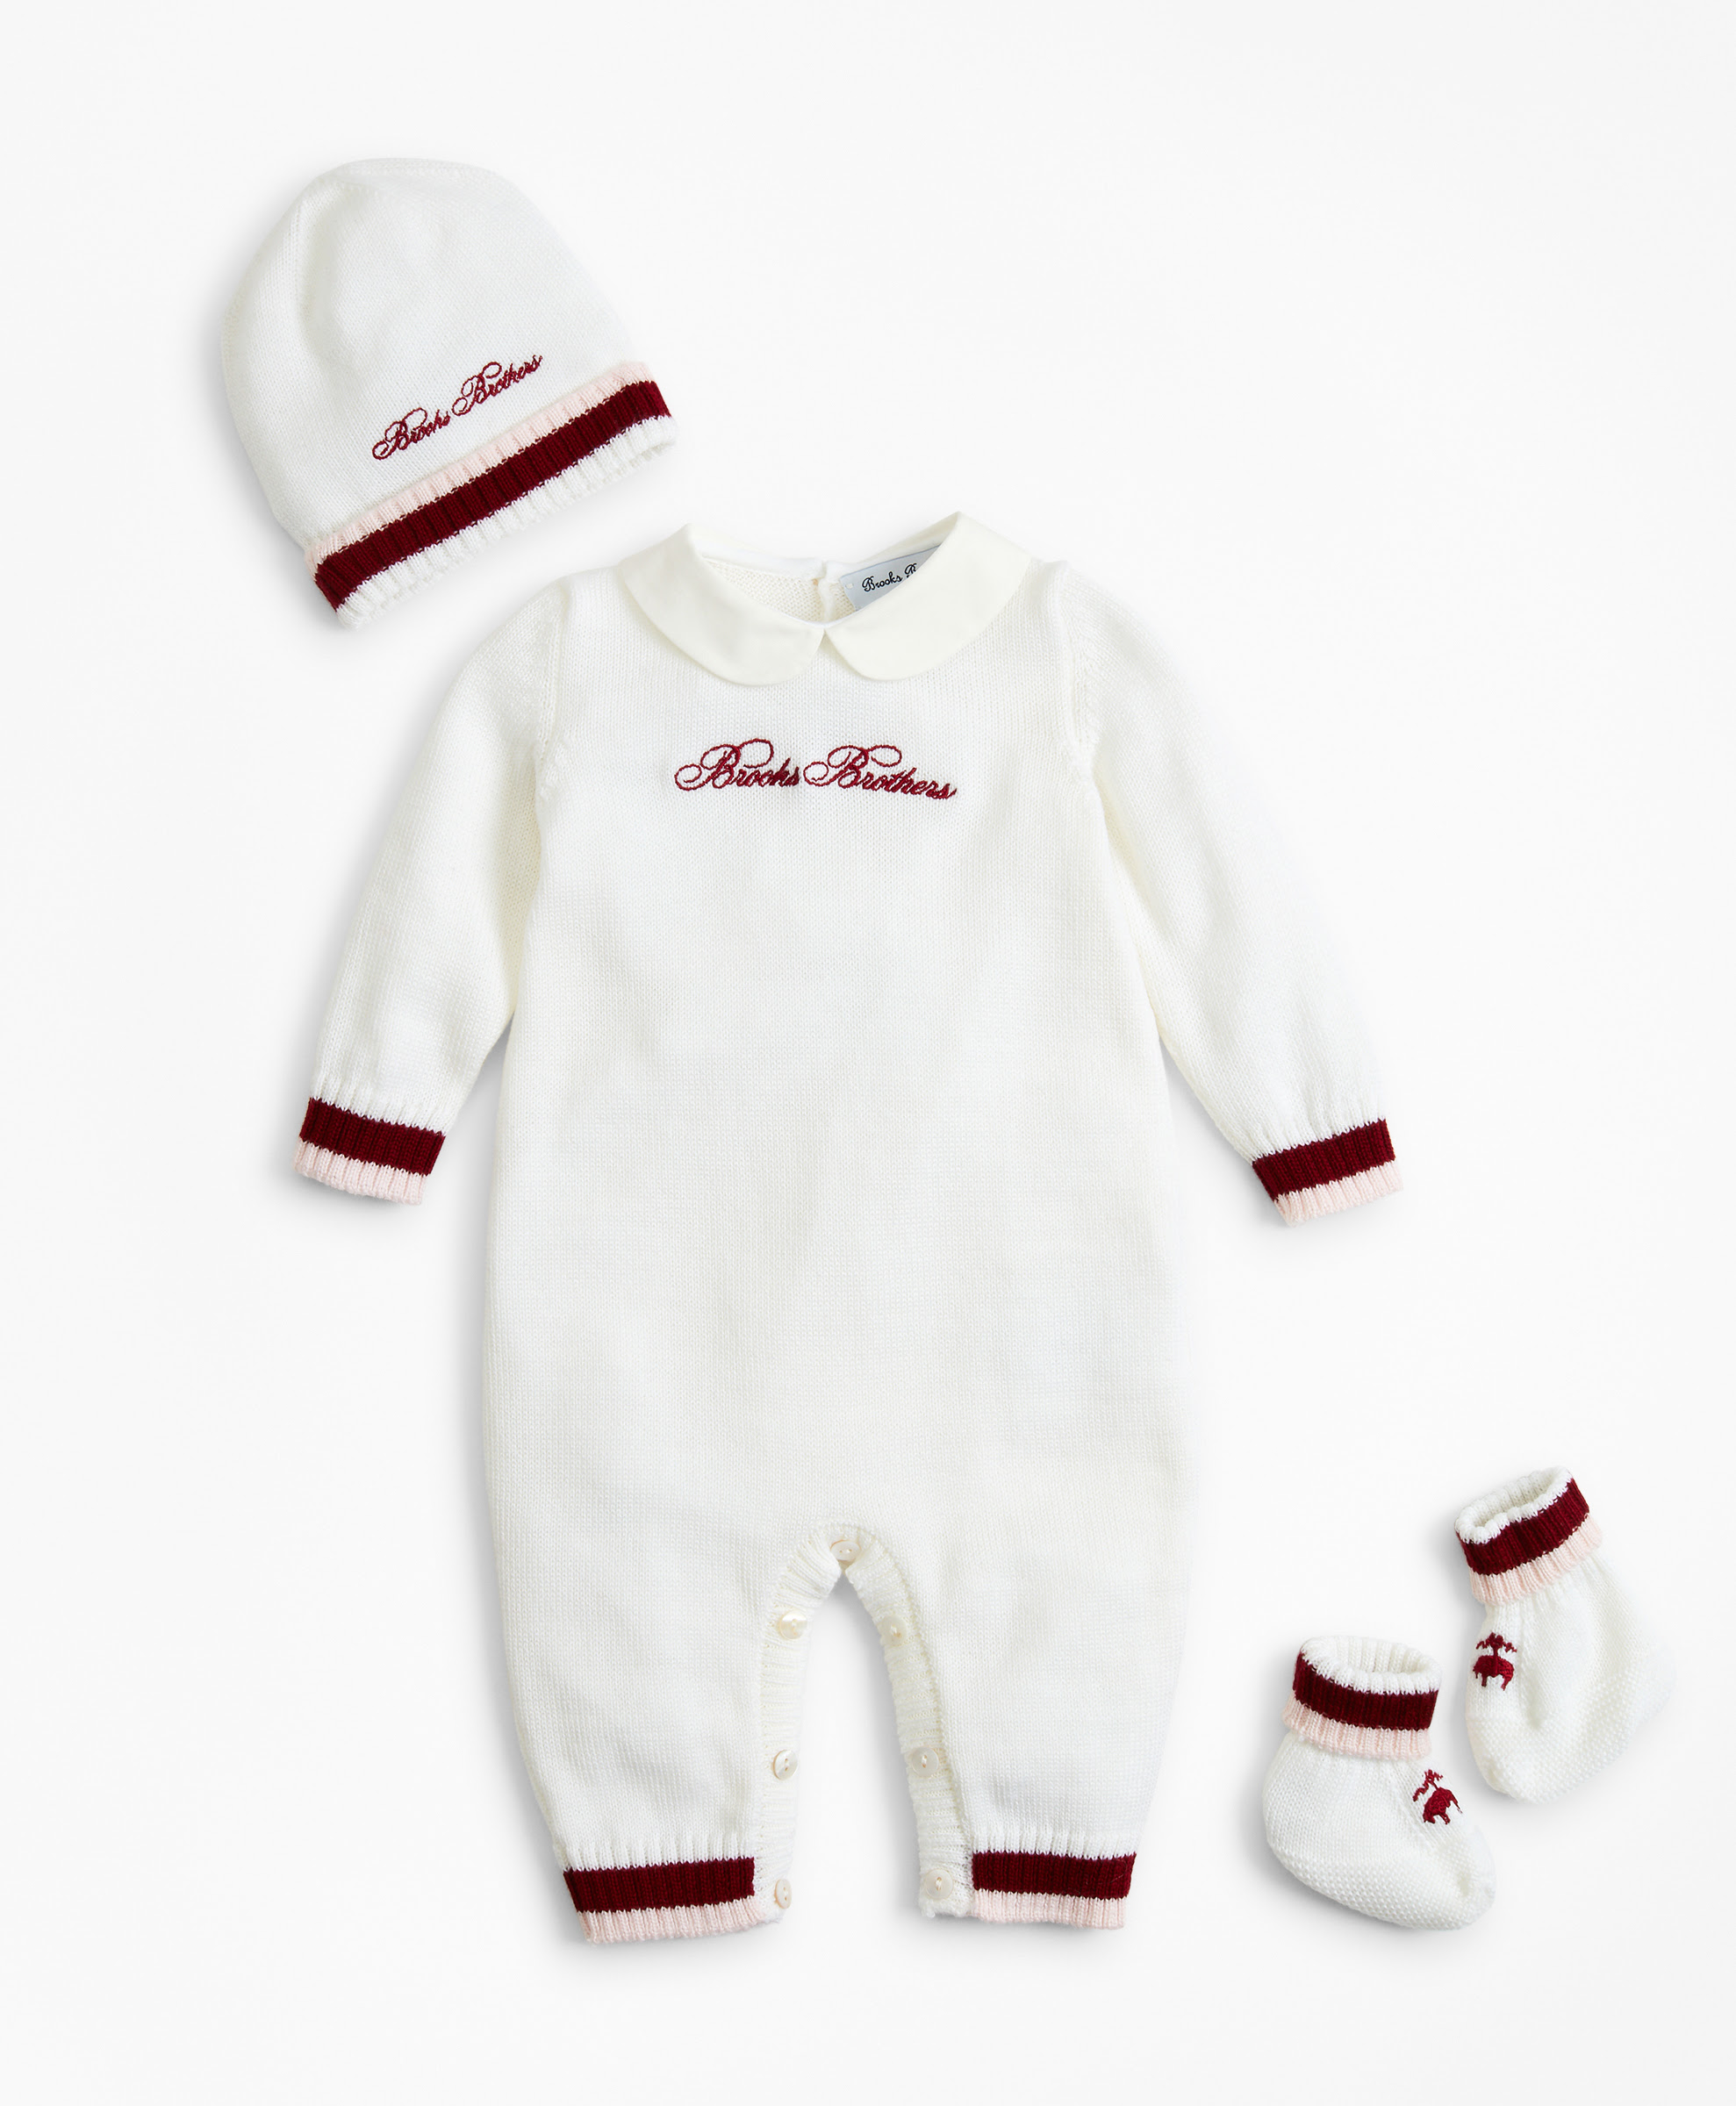 Brooks Brothers anuncia su colección para bebé